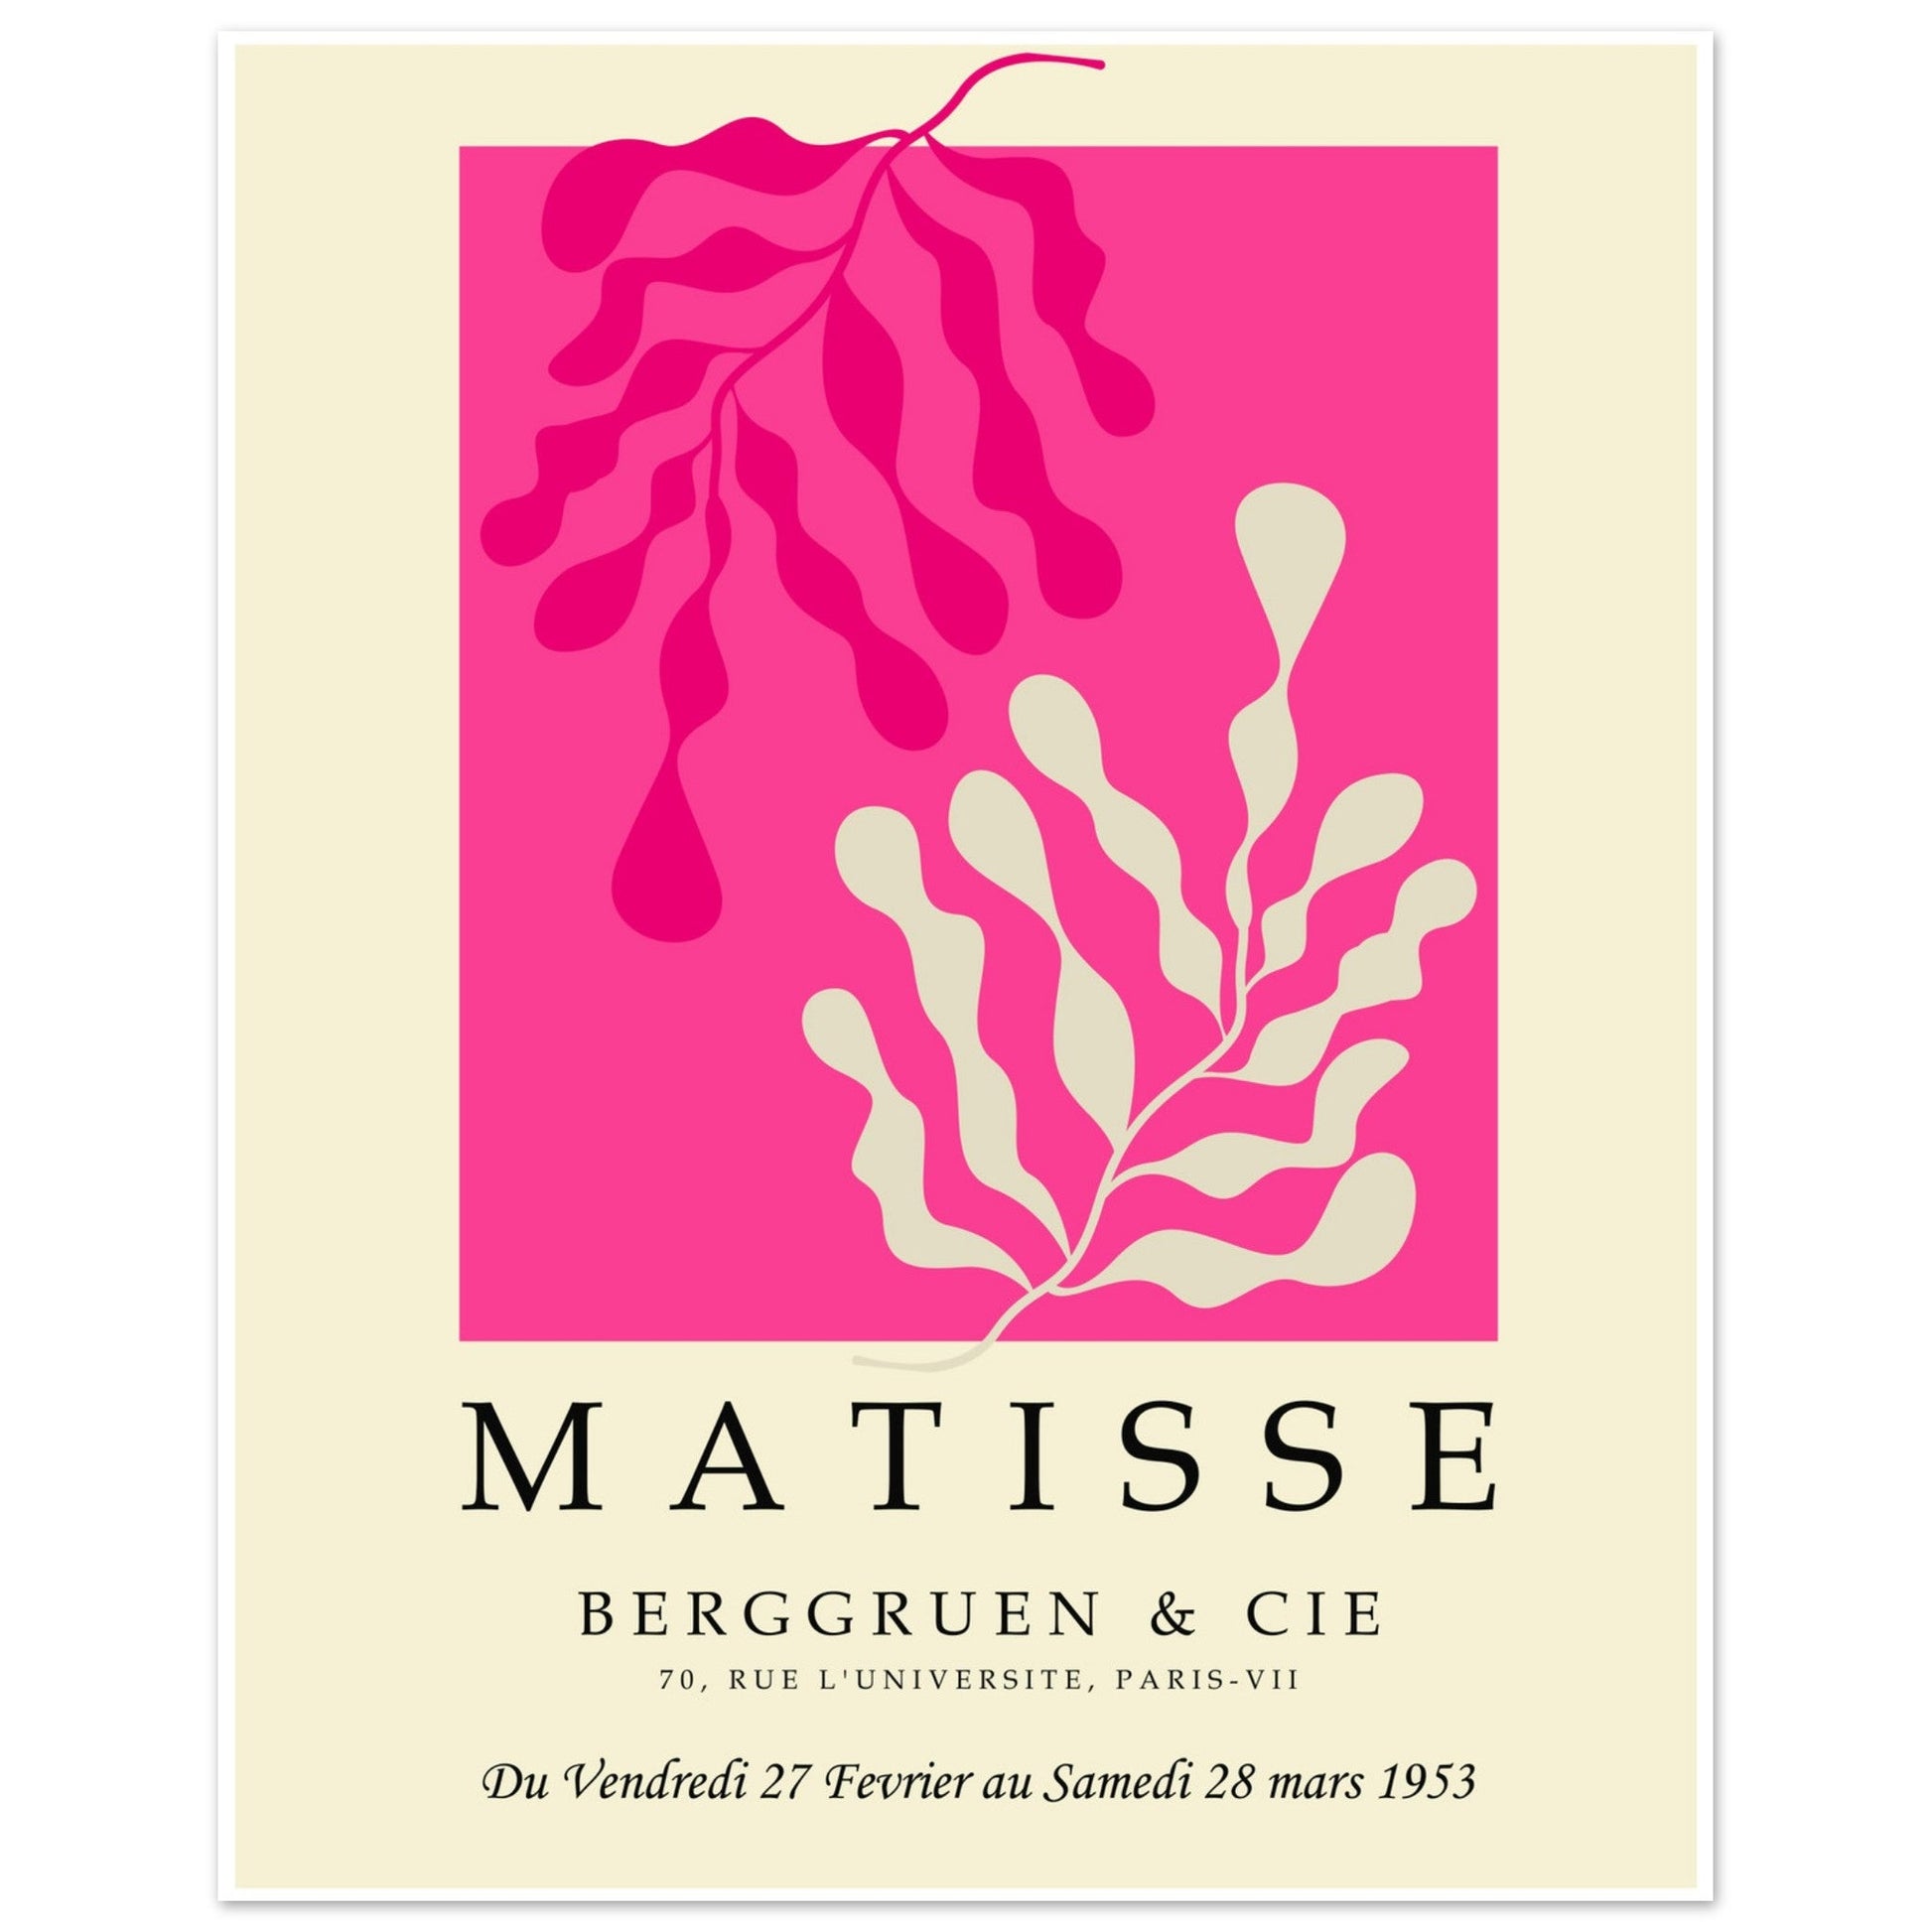 Matisse Cut Outs, Henri Matisse Art Print, Matisse Poster, Matisse Wall Art, #illieeart